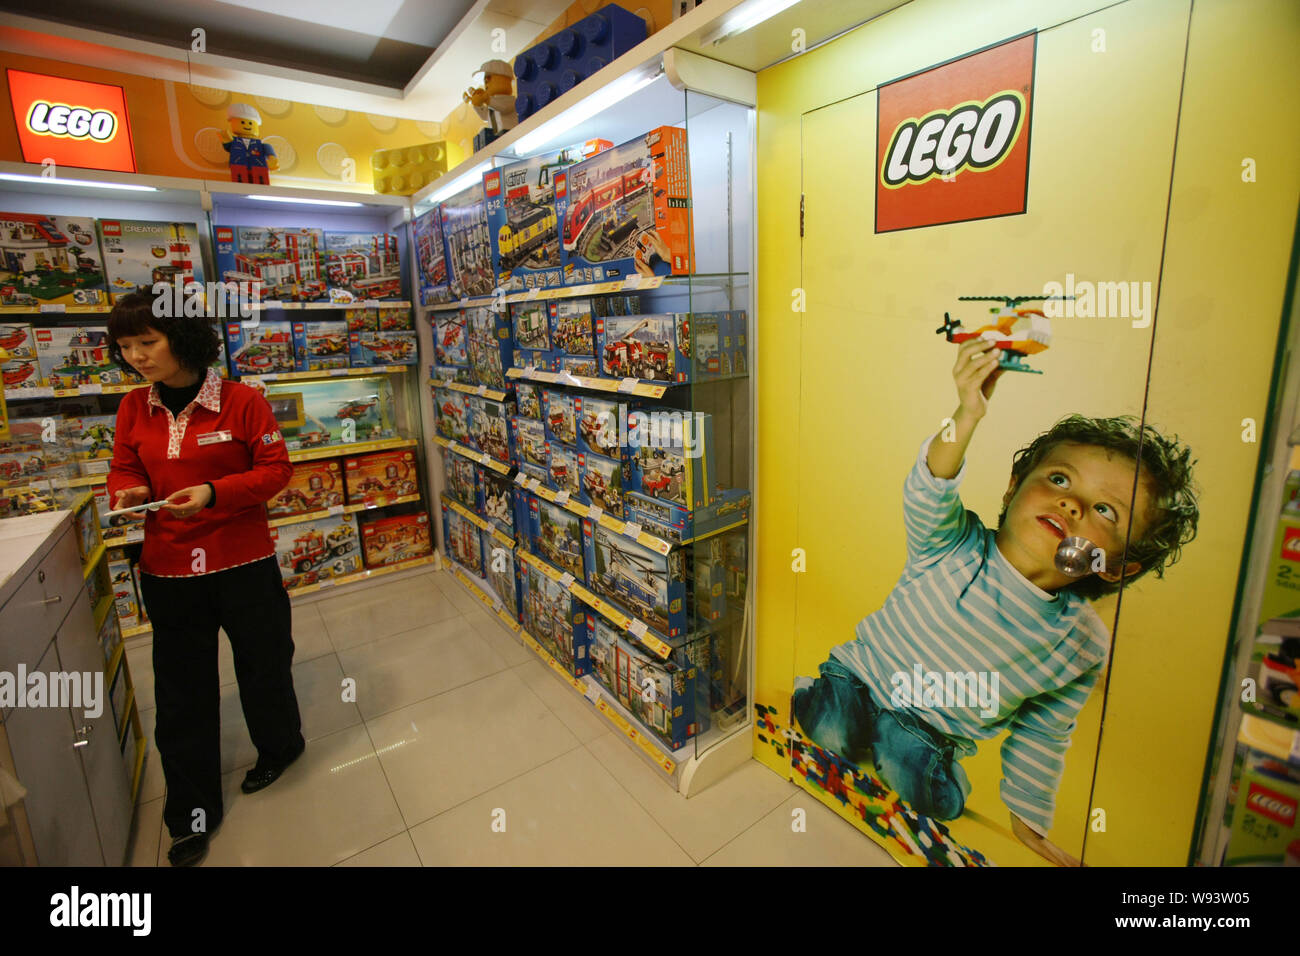 FILE--Un empleado es visto en una tienda de Lego en un centro comercial en  Shanghai, China, 21 de marzo de 2013. A comienzos de este año, Lego superó  a Hasbro a beco